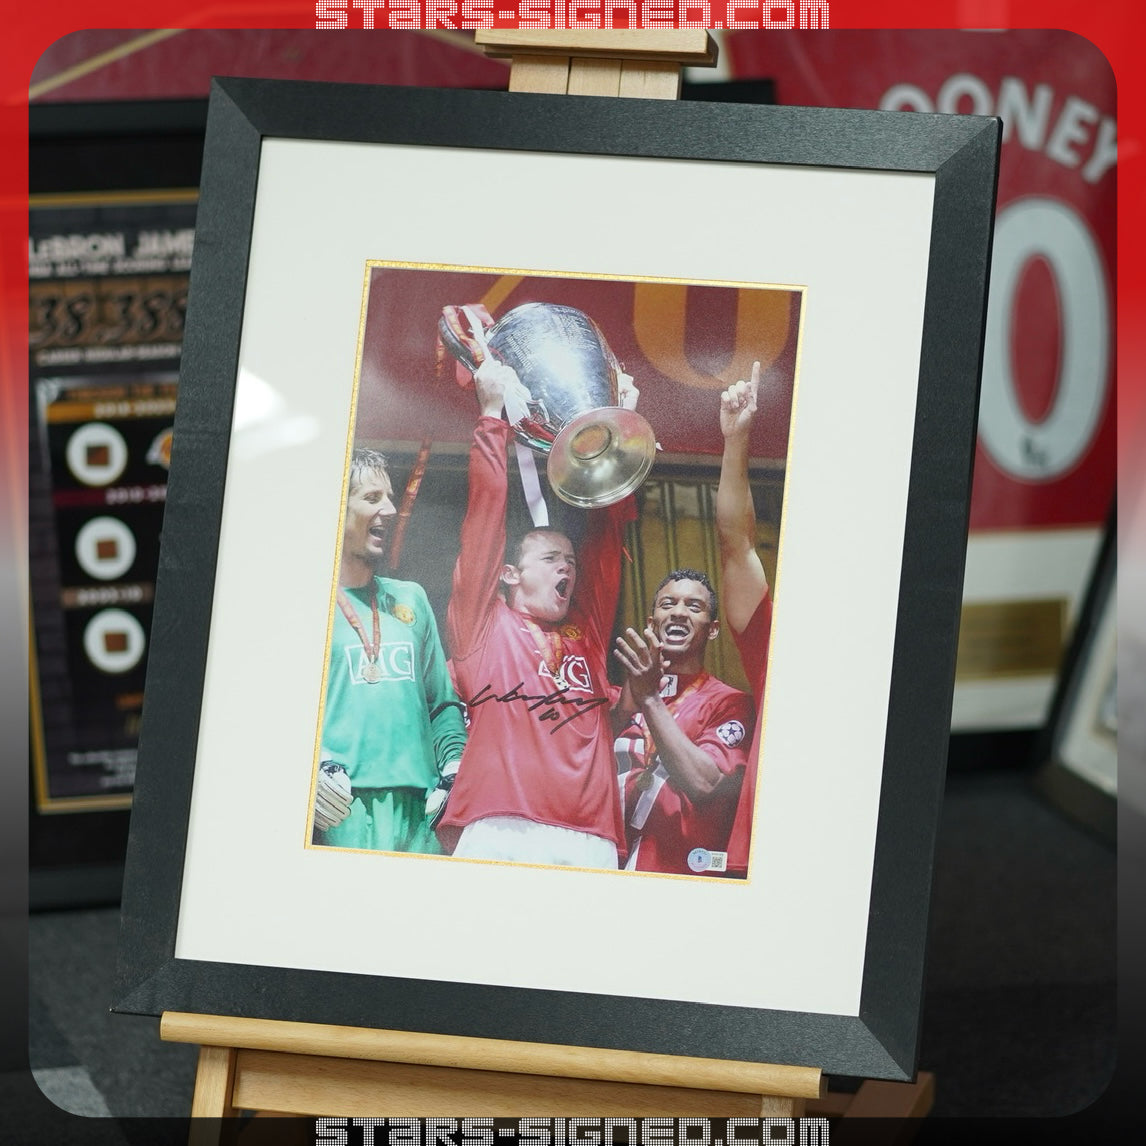 朗尼 Wayne Rooney 曼聯【2008 歐冠捧盃】親筆簽名照片裱框